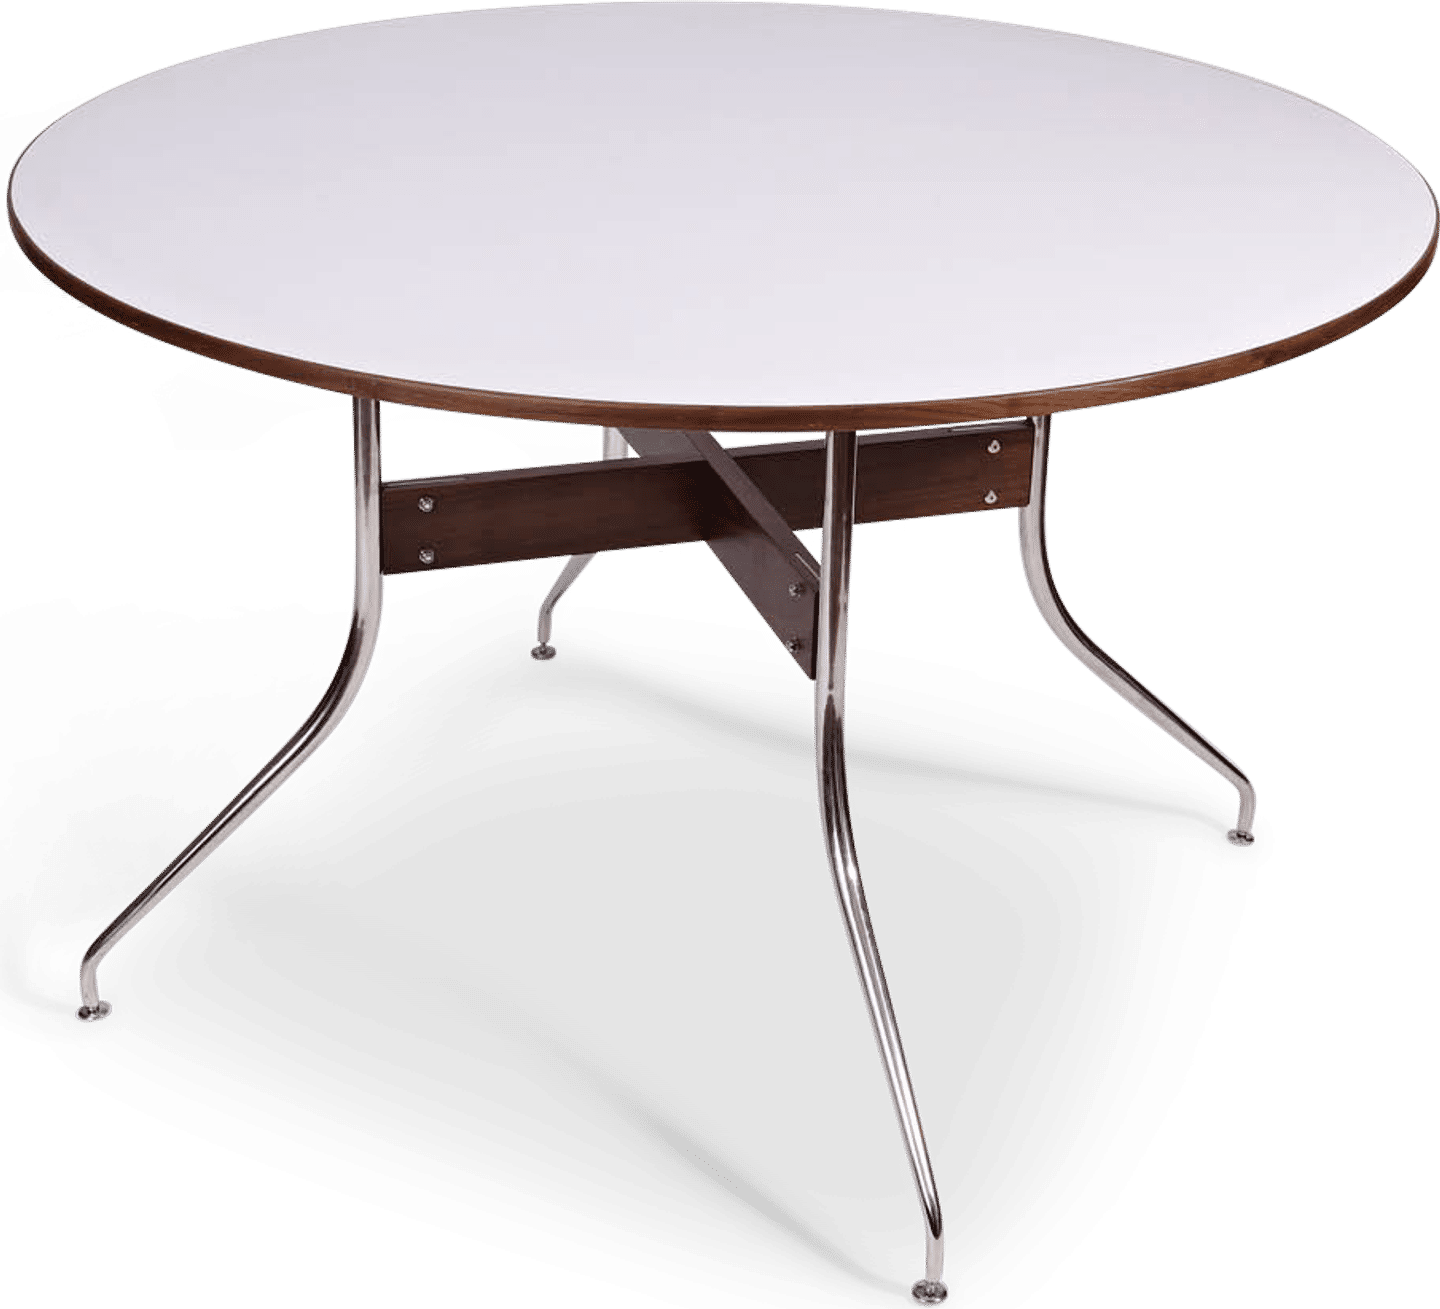 Runder Esstisch mit Swag-Beinen White image.